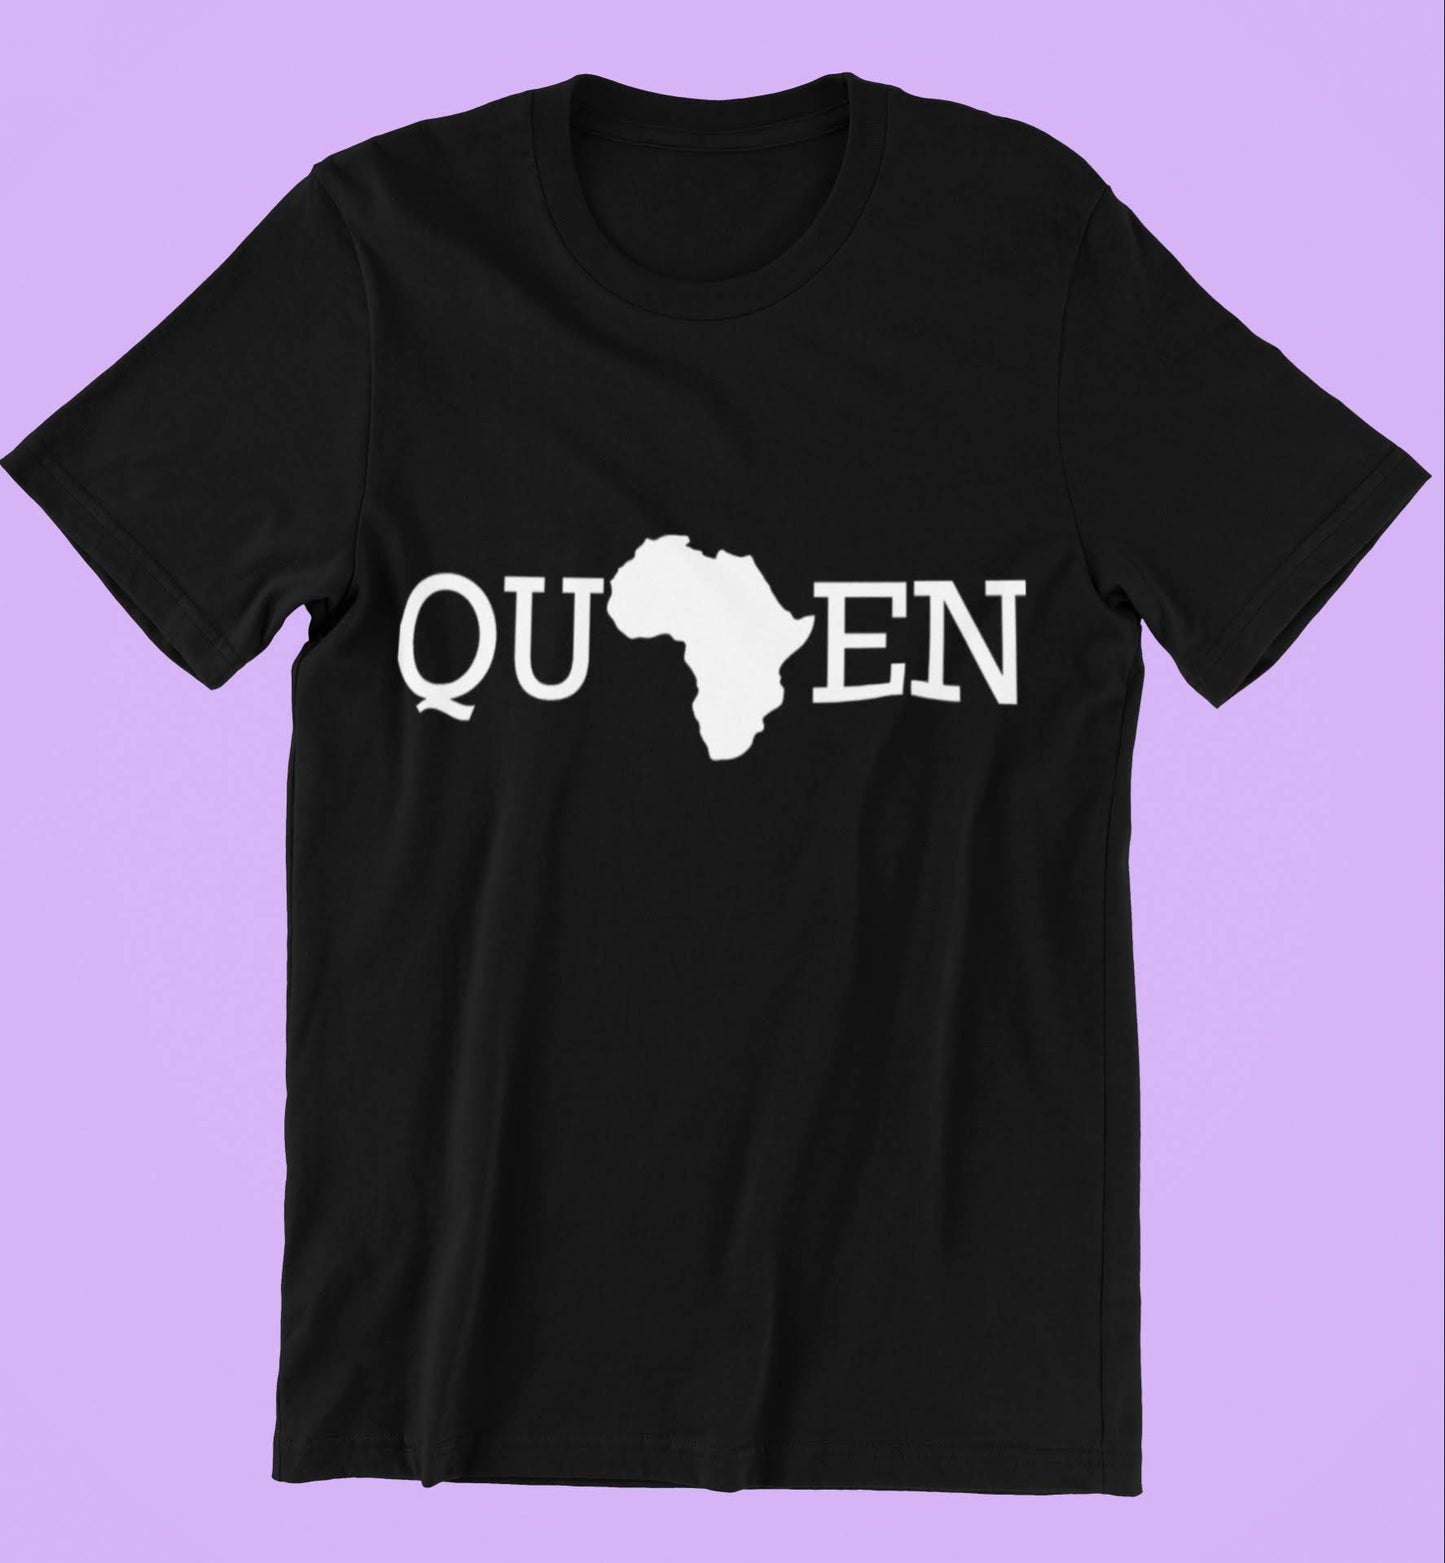 Queen "Africa" Tee- Unisex